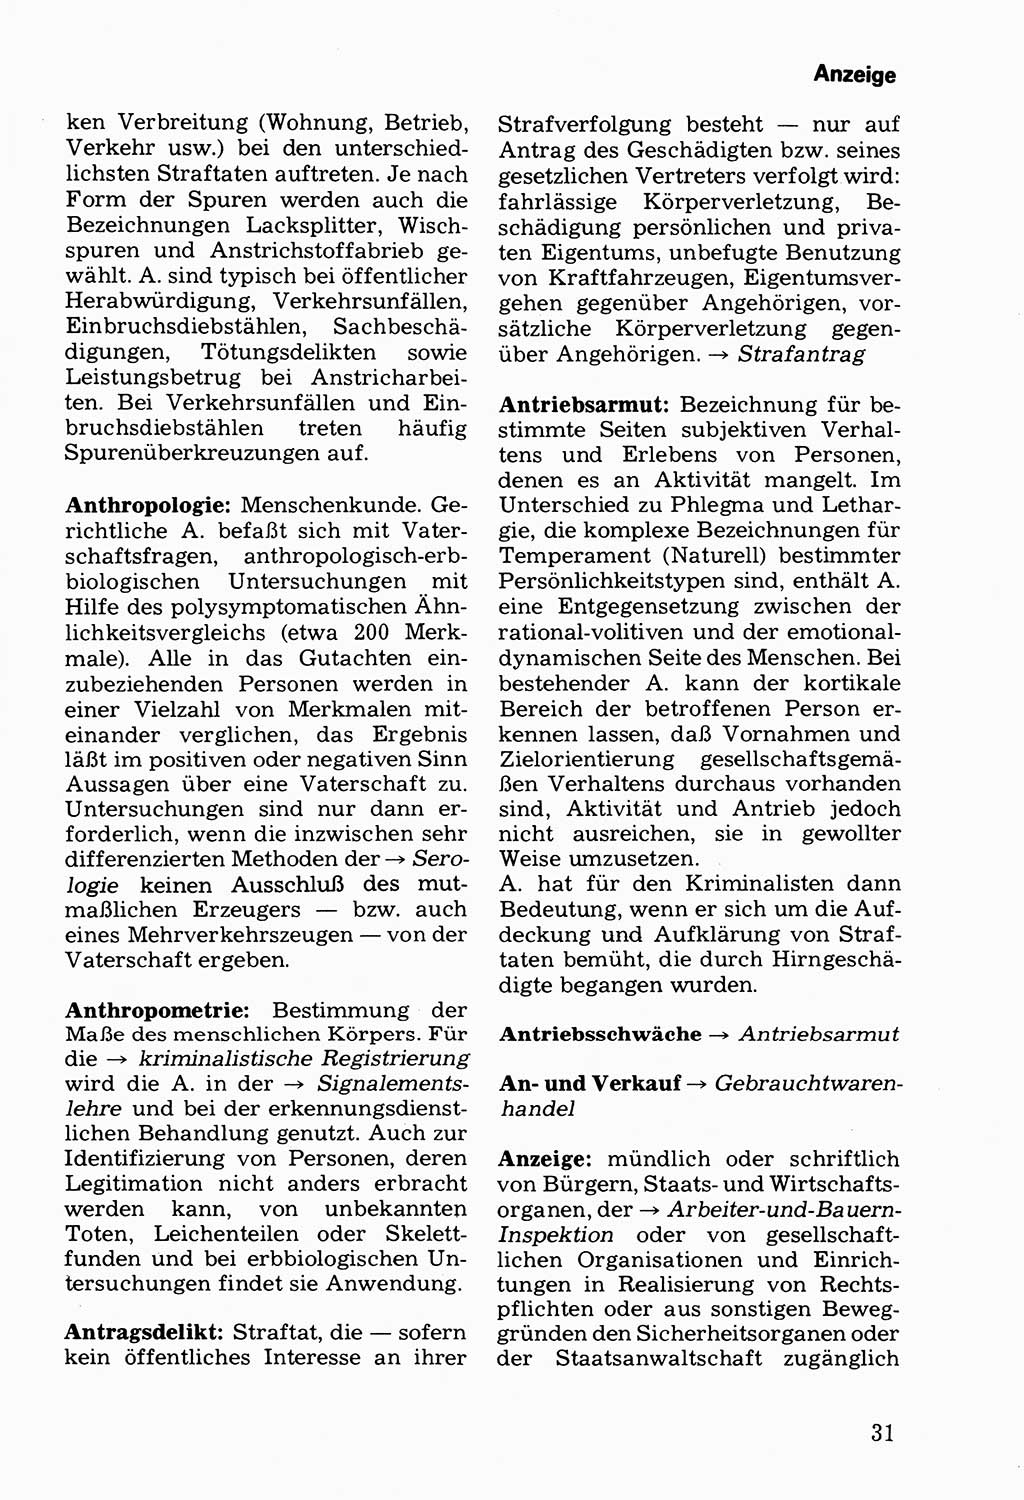 Wörterbuch der sozialistischen Kriminalistik [Deutsche Demokratische Republik (DDR)] 1981, Seite 31 (Wb. soz. Krim. DDR 1981, S. 31)